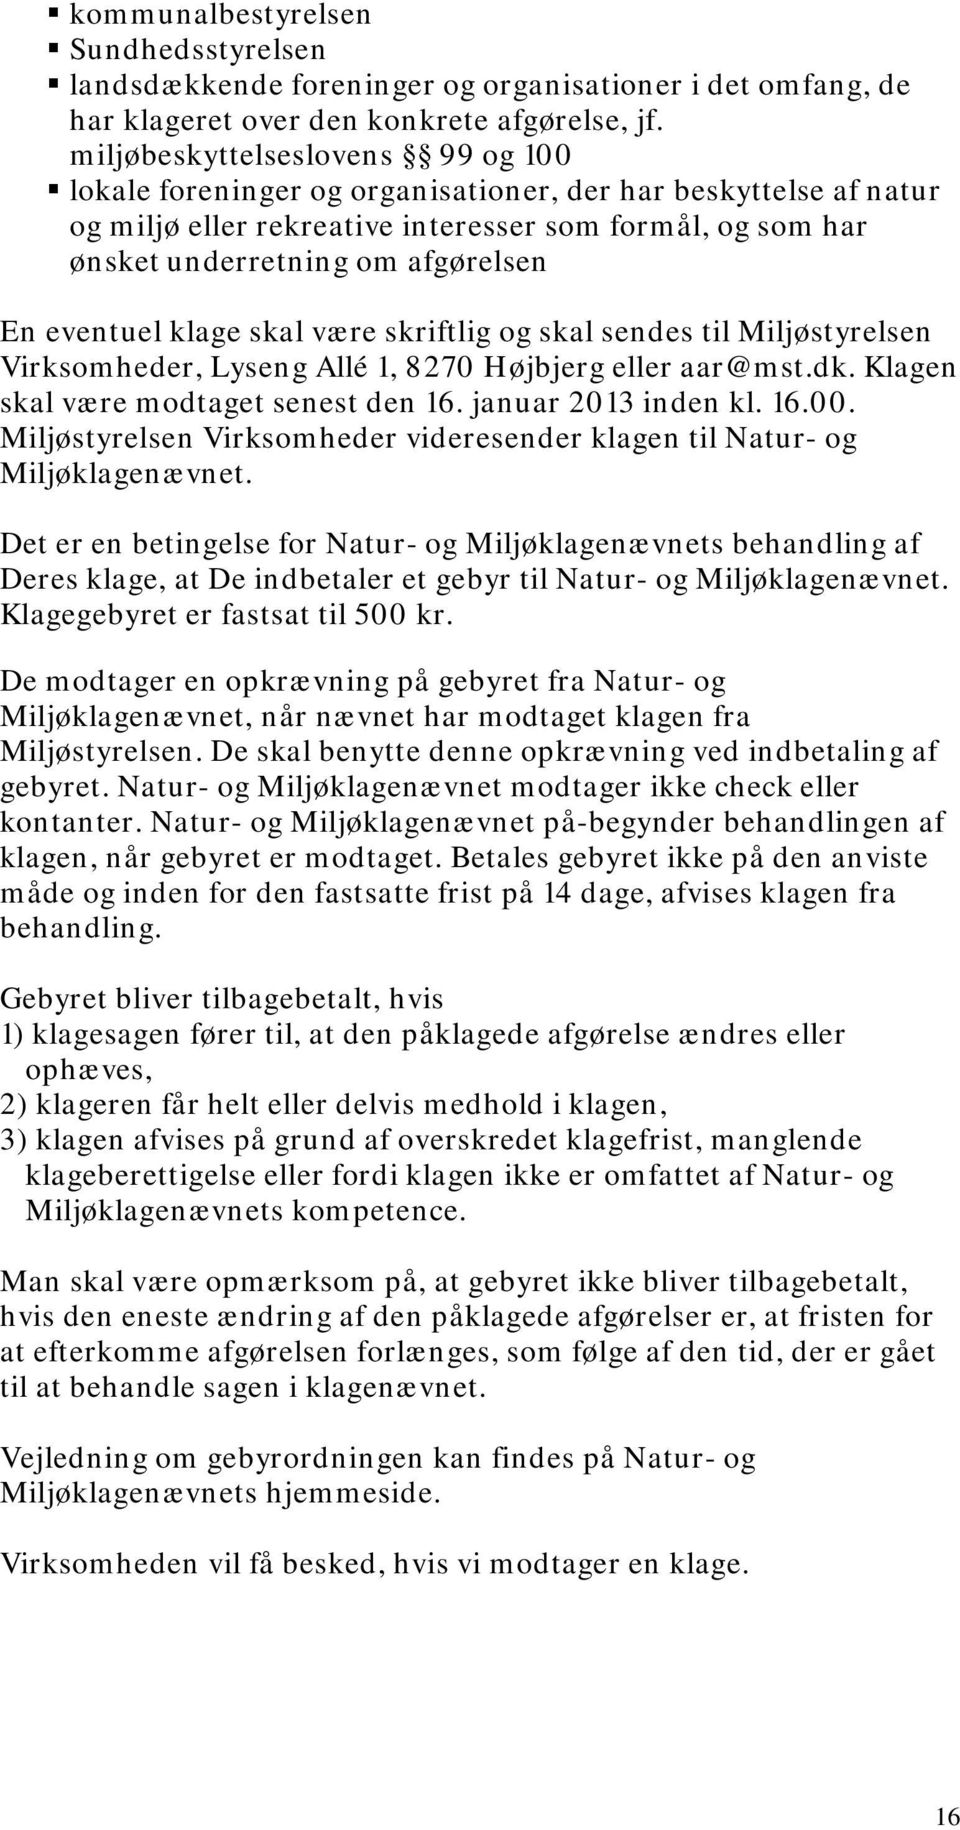 eventuel klage skal være skriftlig og skal sendes til Miljøstyrelsen Virksomheder, Lyseng Allé 1, 8270 Højbjerg eller aar@mst.dk. Klagen skal være modtaget senest den 16. januar 2013 inden kl. 16.00.